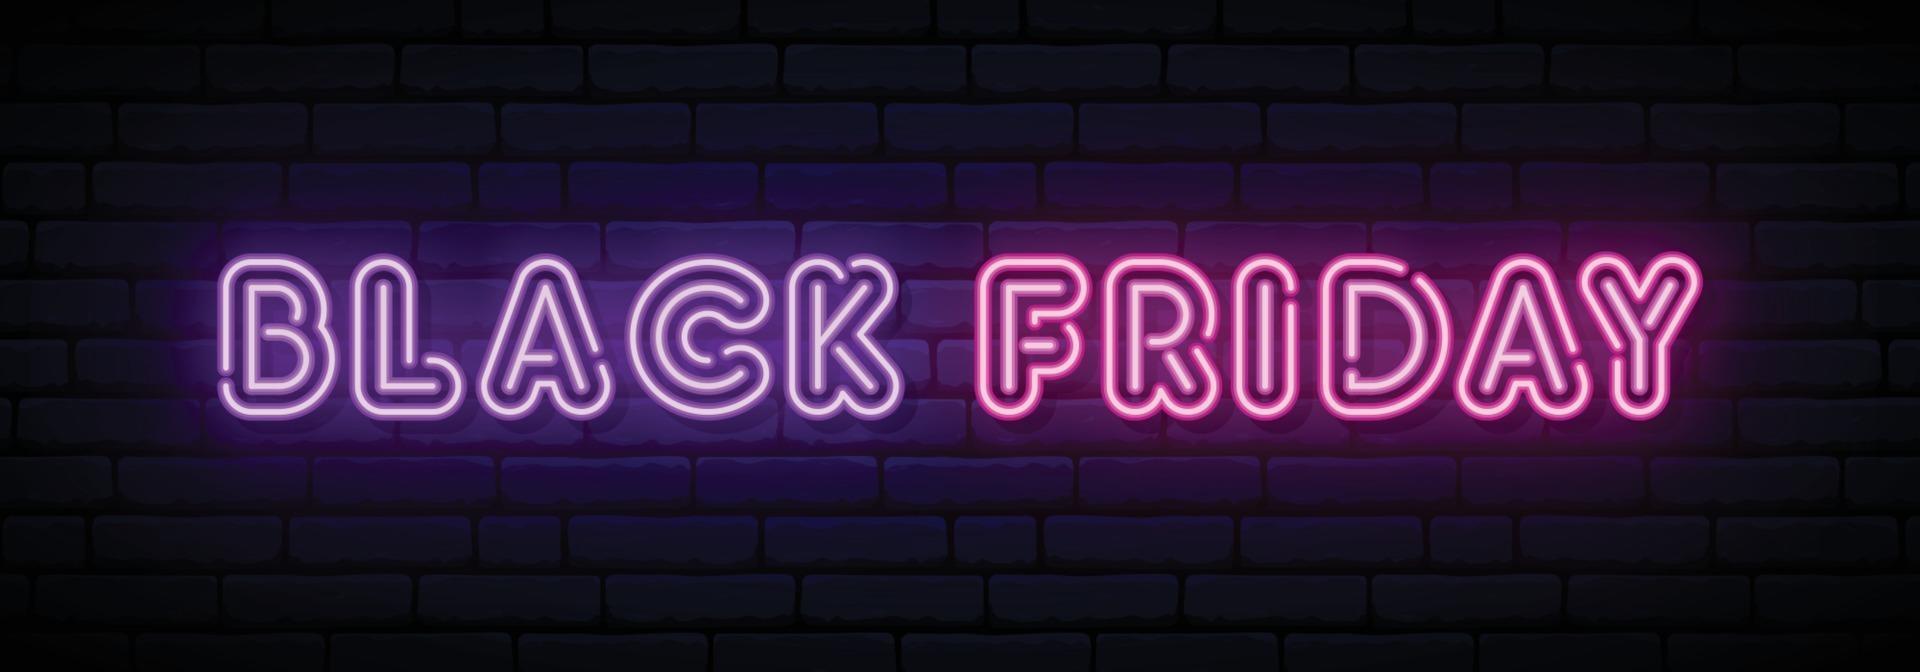 zwarte vrijdag verkoop neon teken. vector